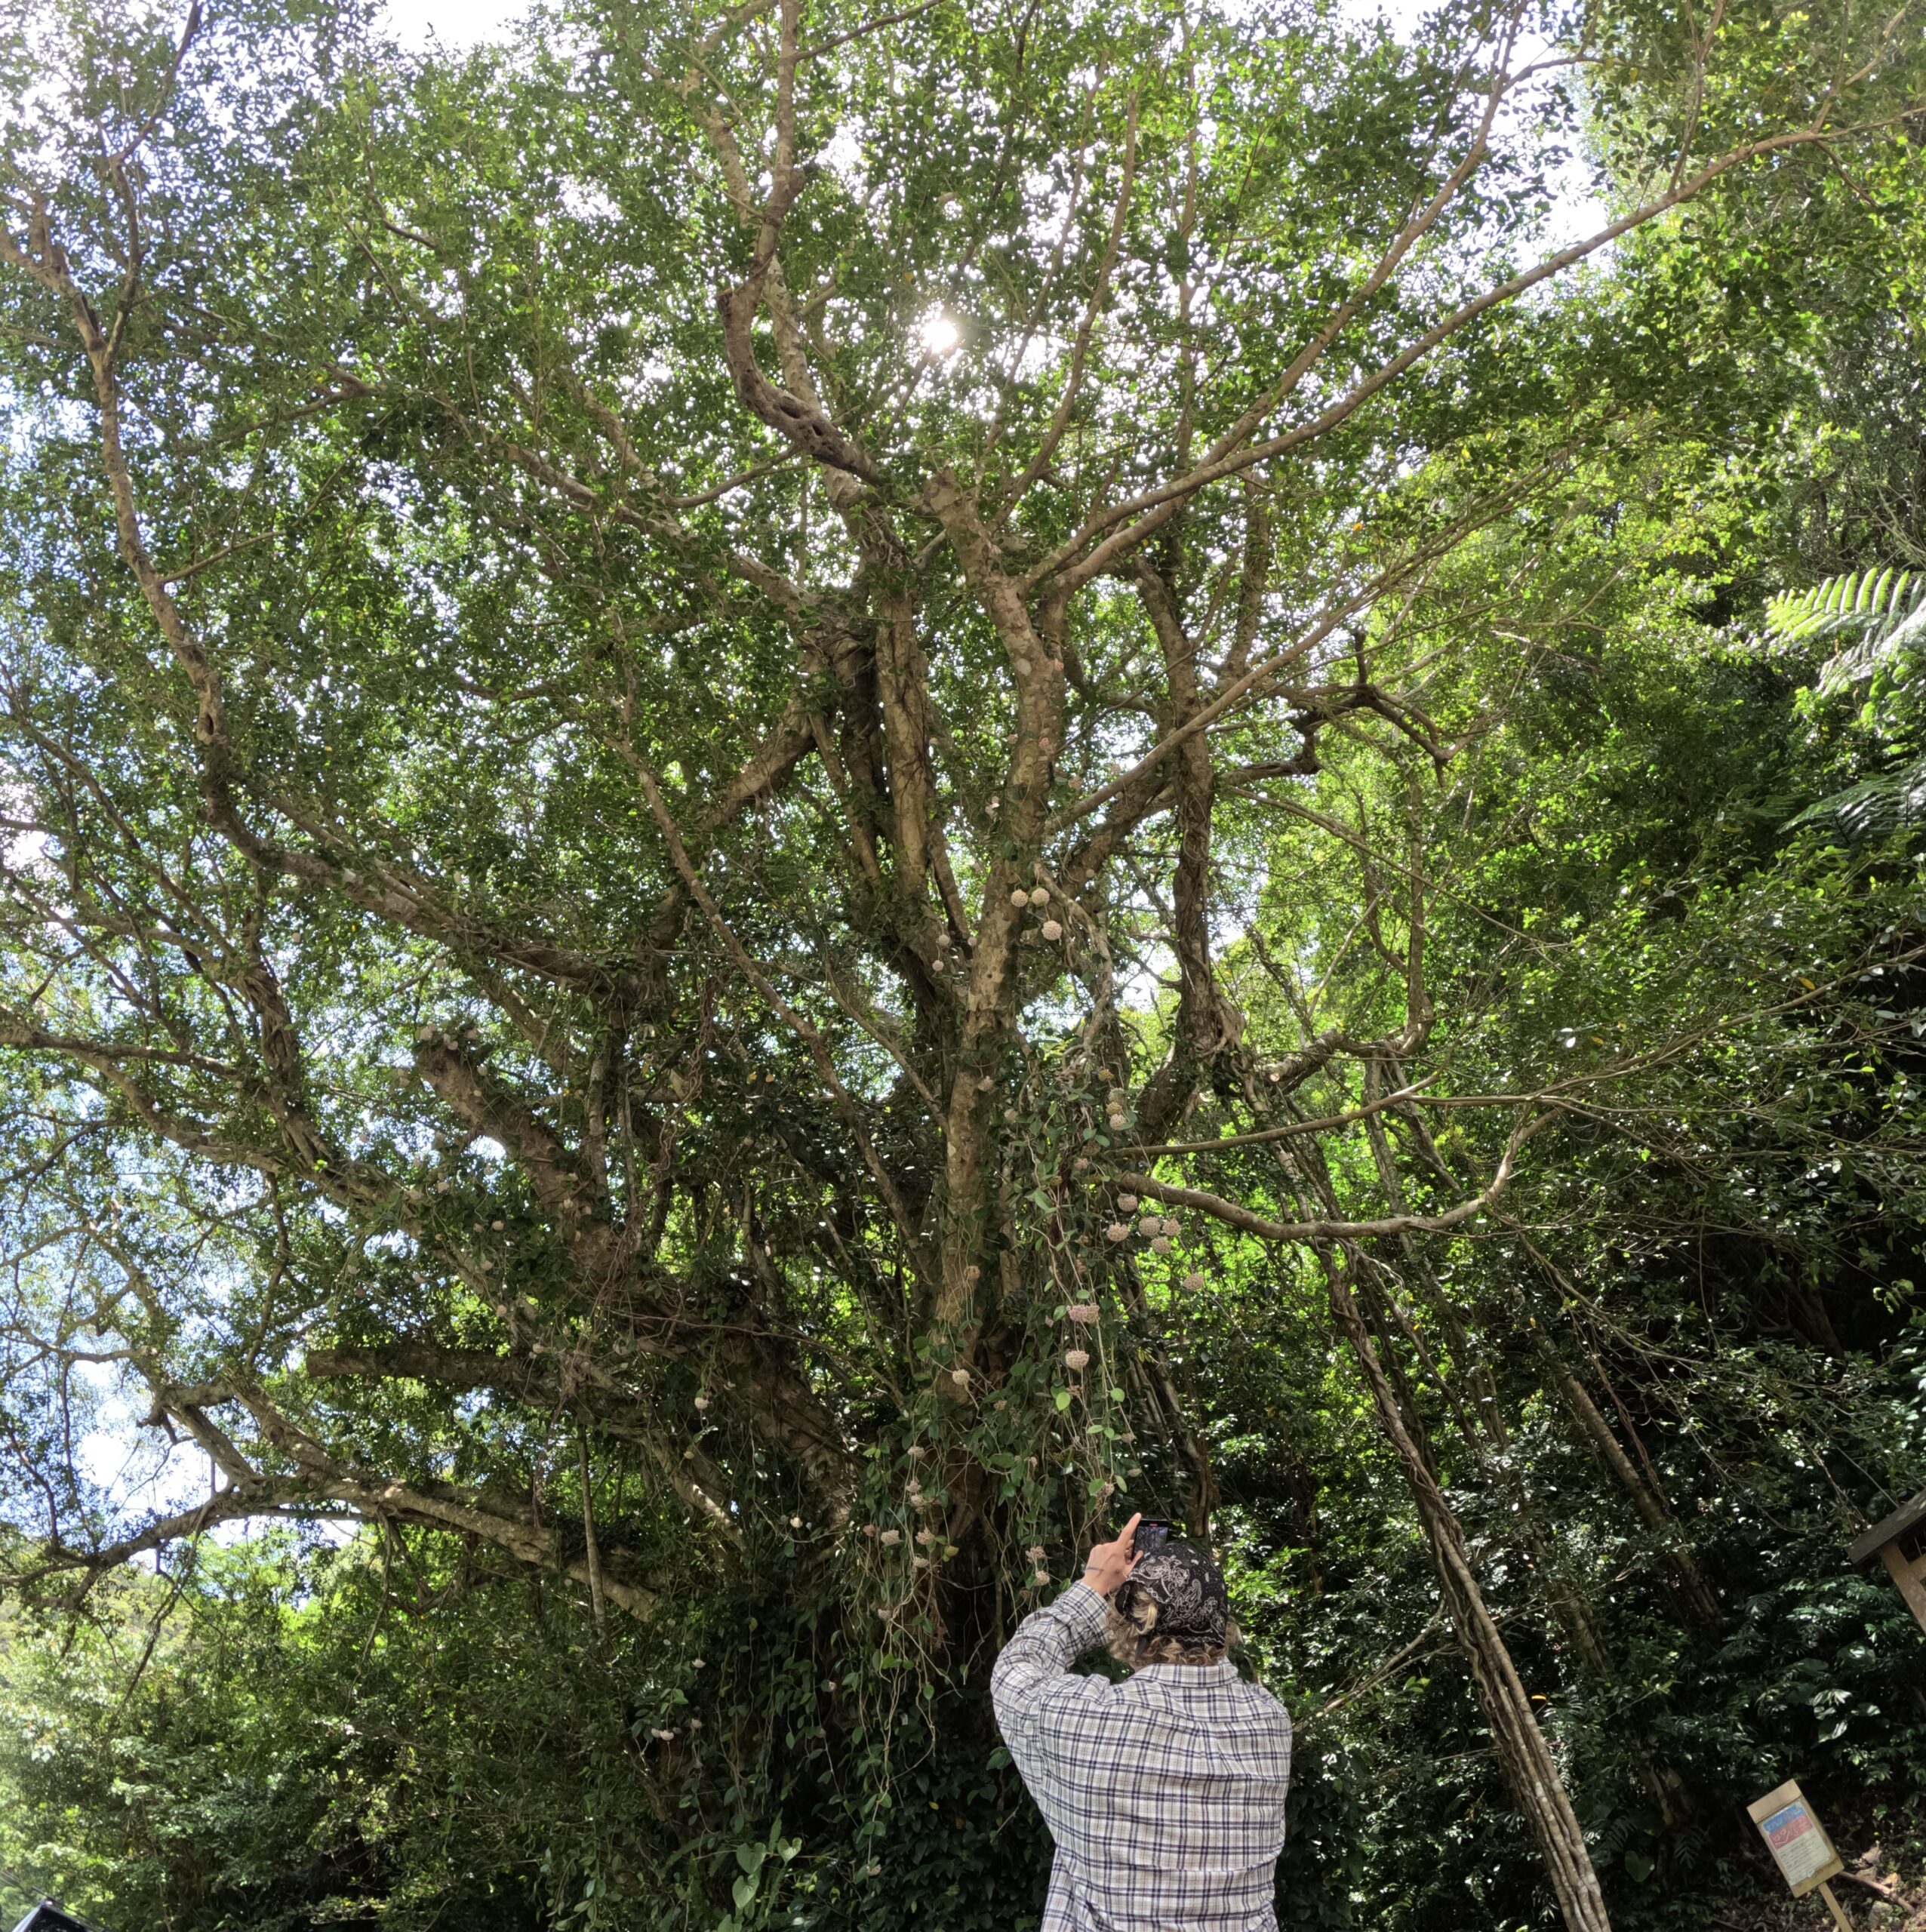 観光ツアーの途中で訪れたガジュマルの大木の写真を撮る男性